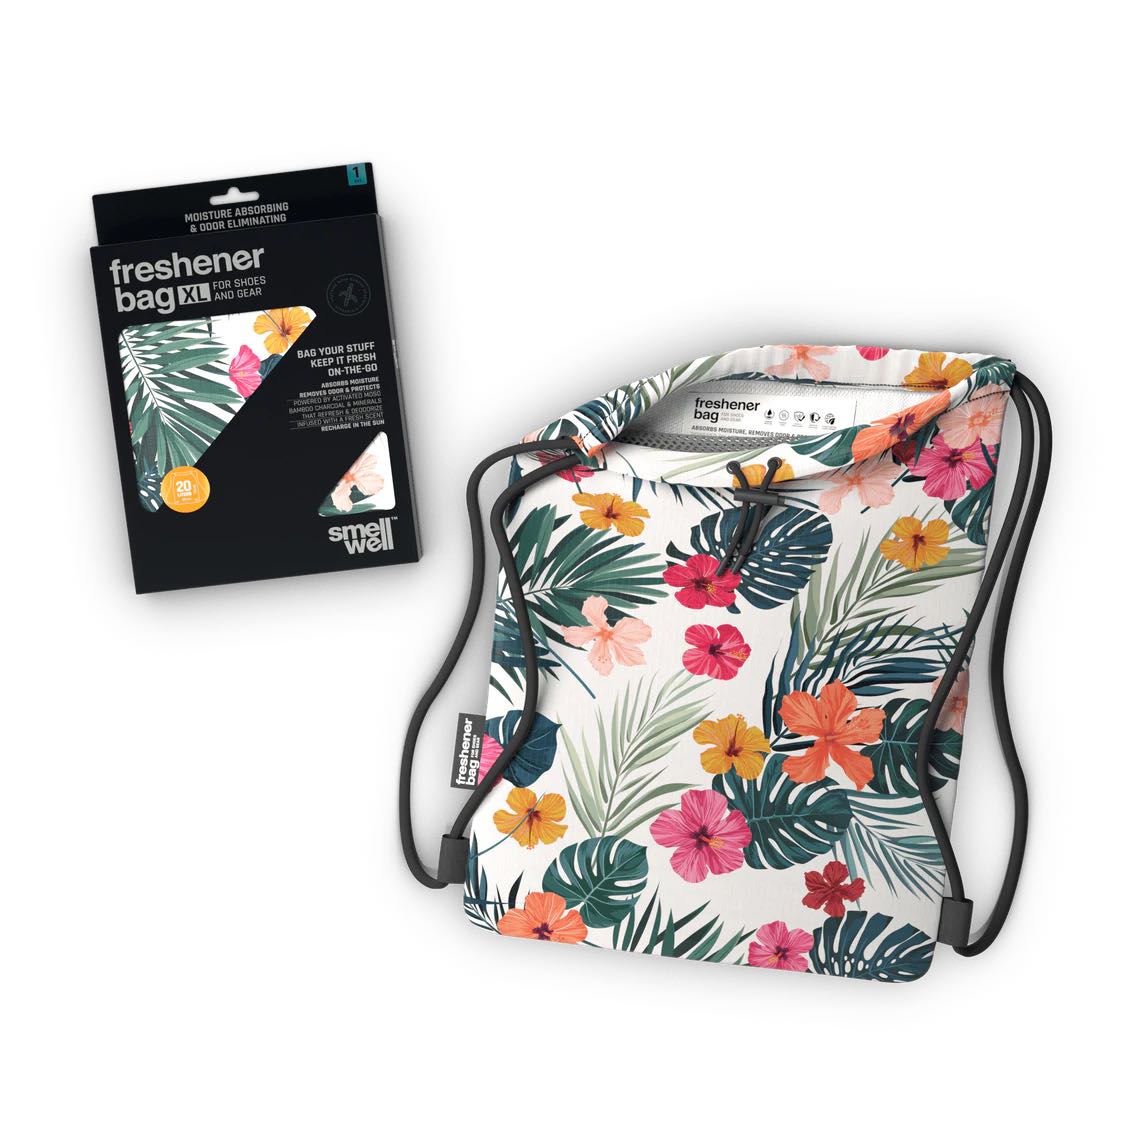 SmellWell freshener bag XL floral